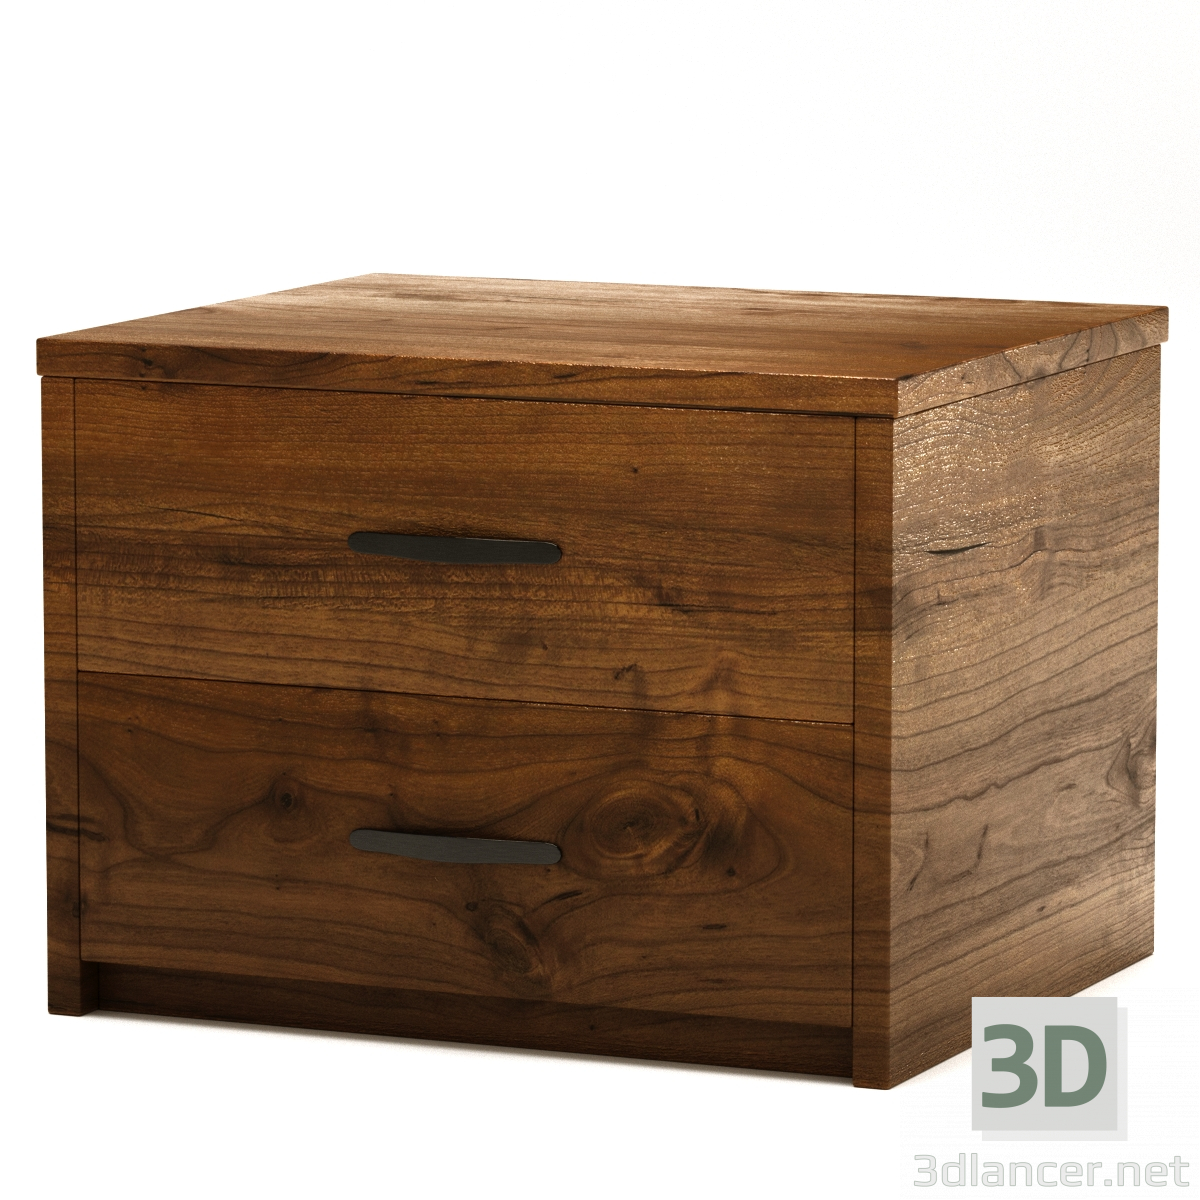 3d Wooden bedside table model buy - render